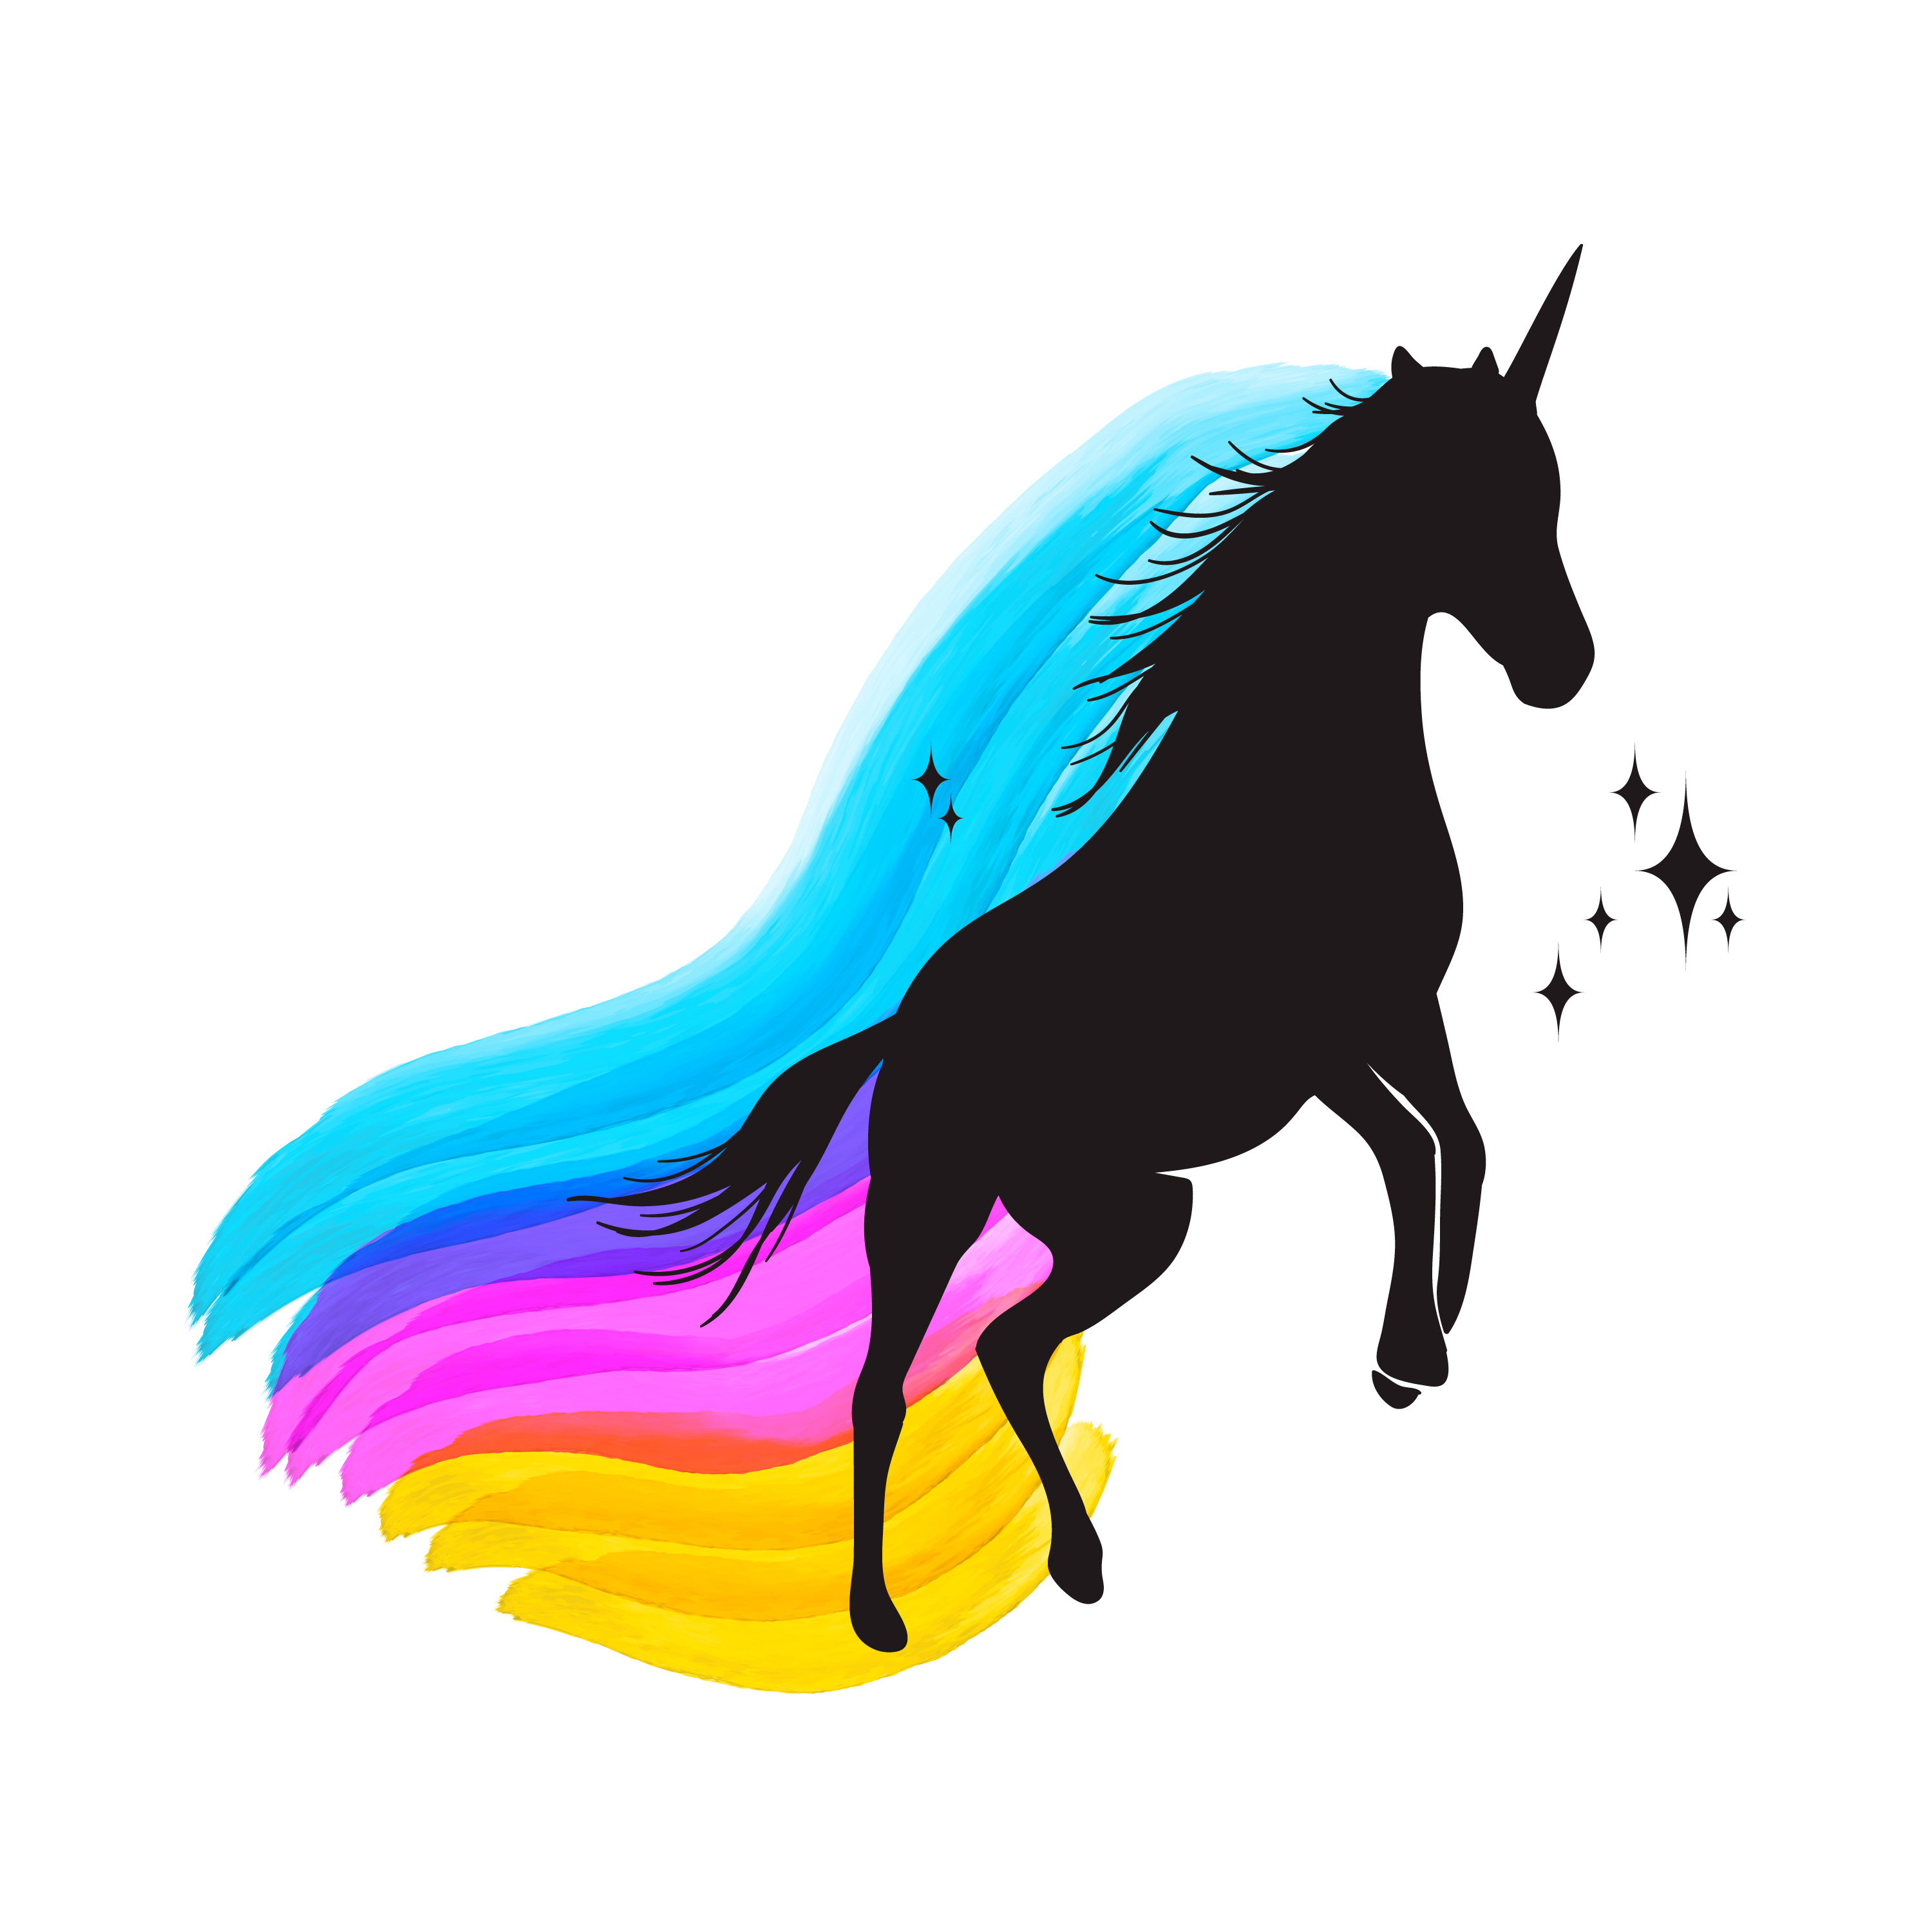 Mythology illustration set of unicorn silhouette, unicorn with